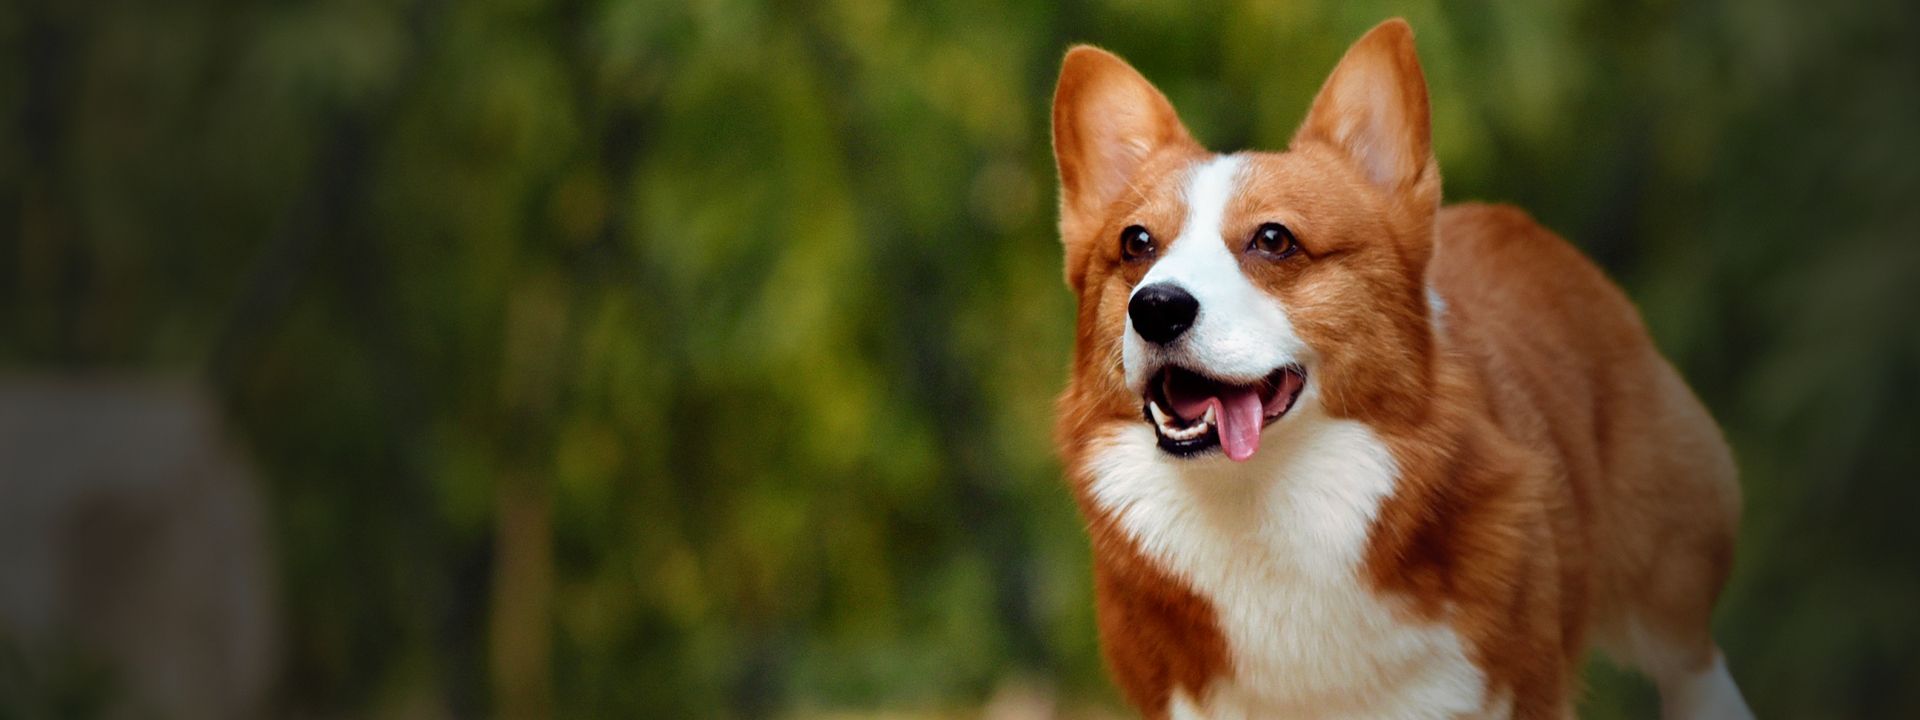 happy corgi dog running